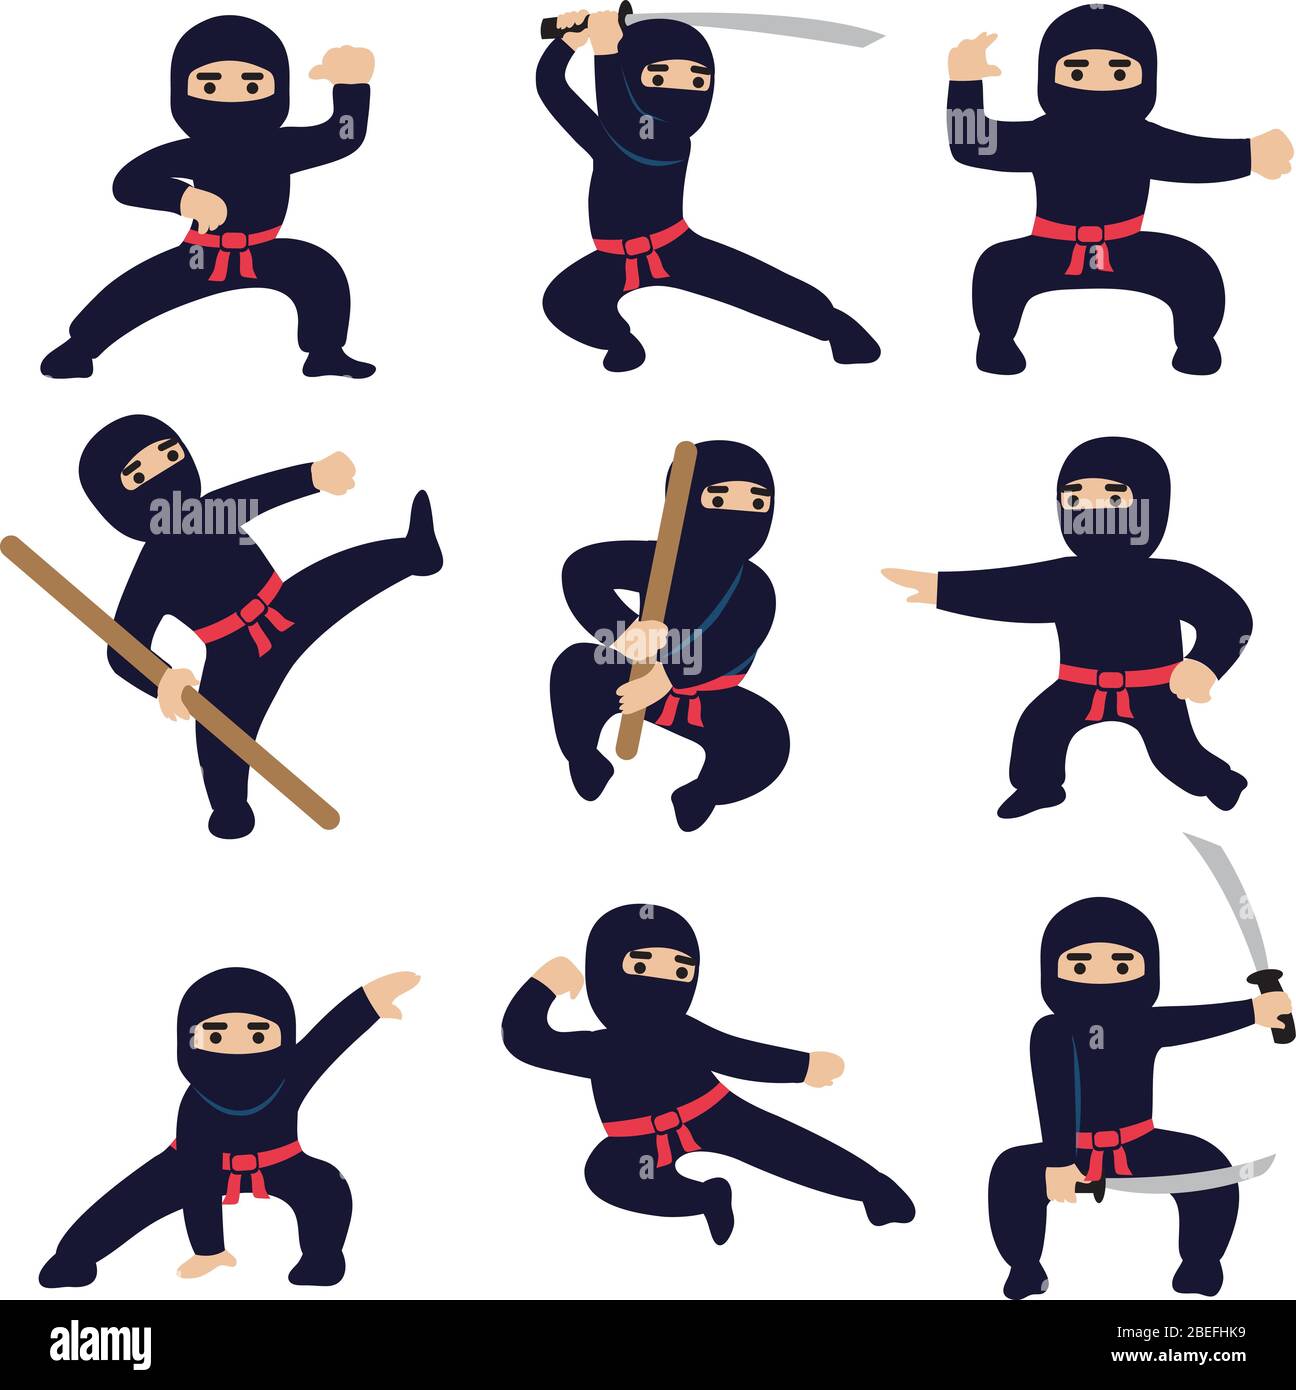 Espada ninja: Más de 34,344 ilustraciones y dibujos de stock con